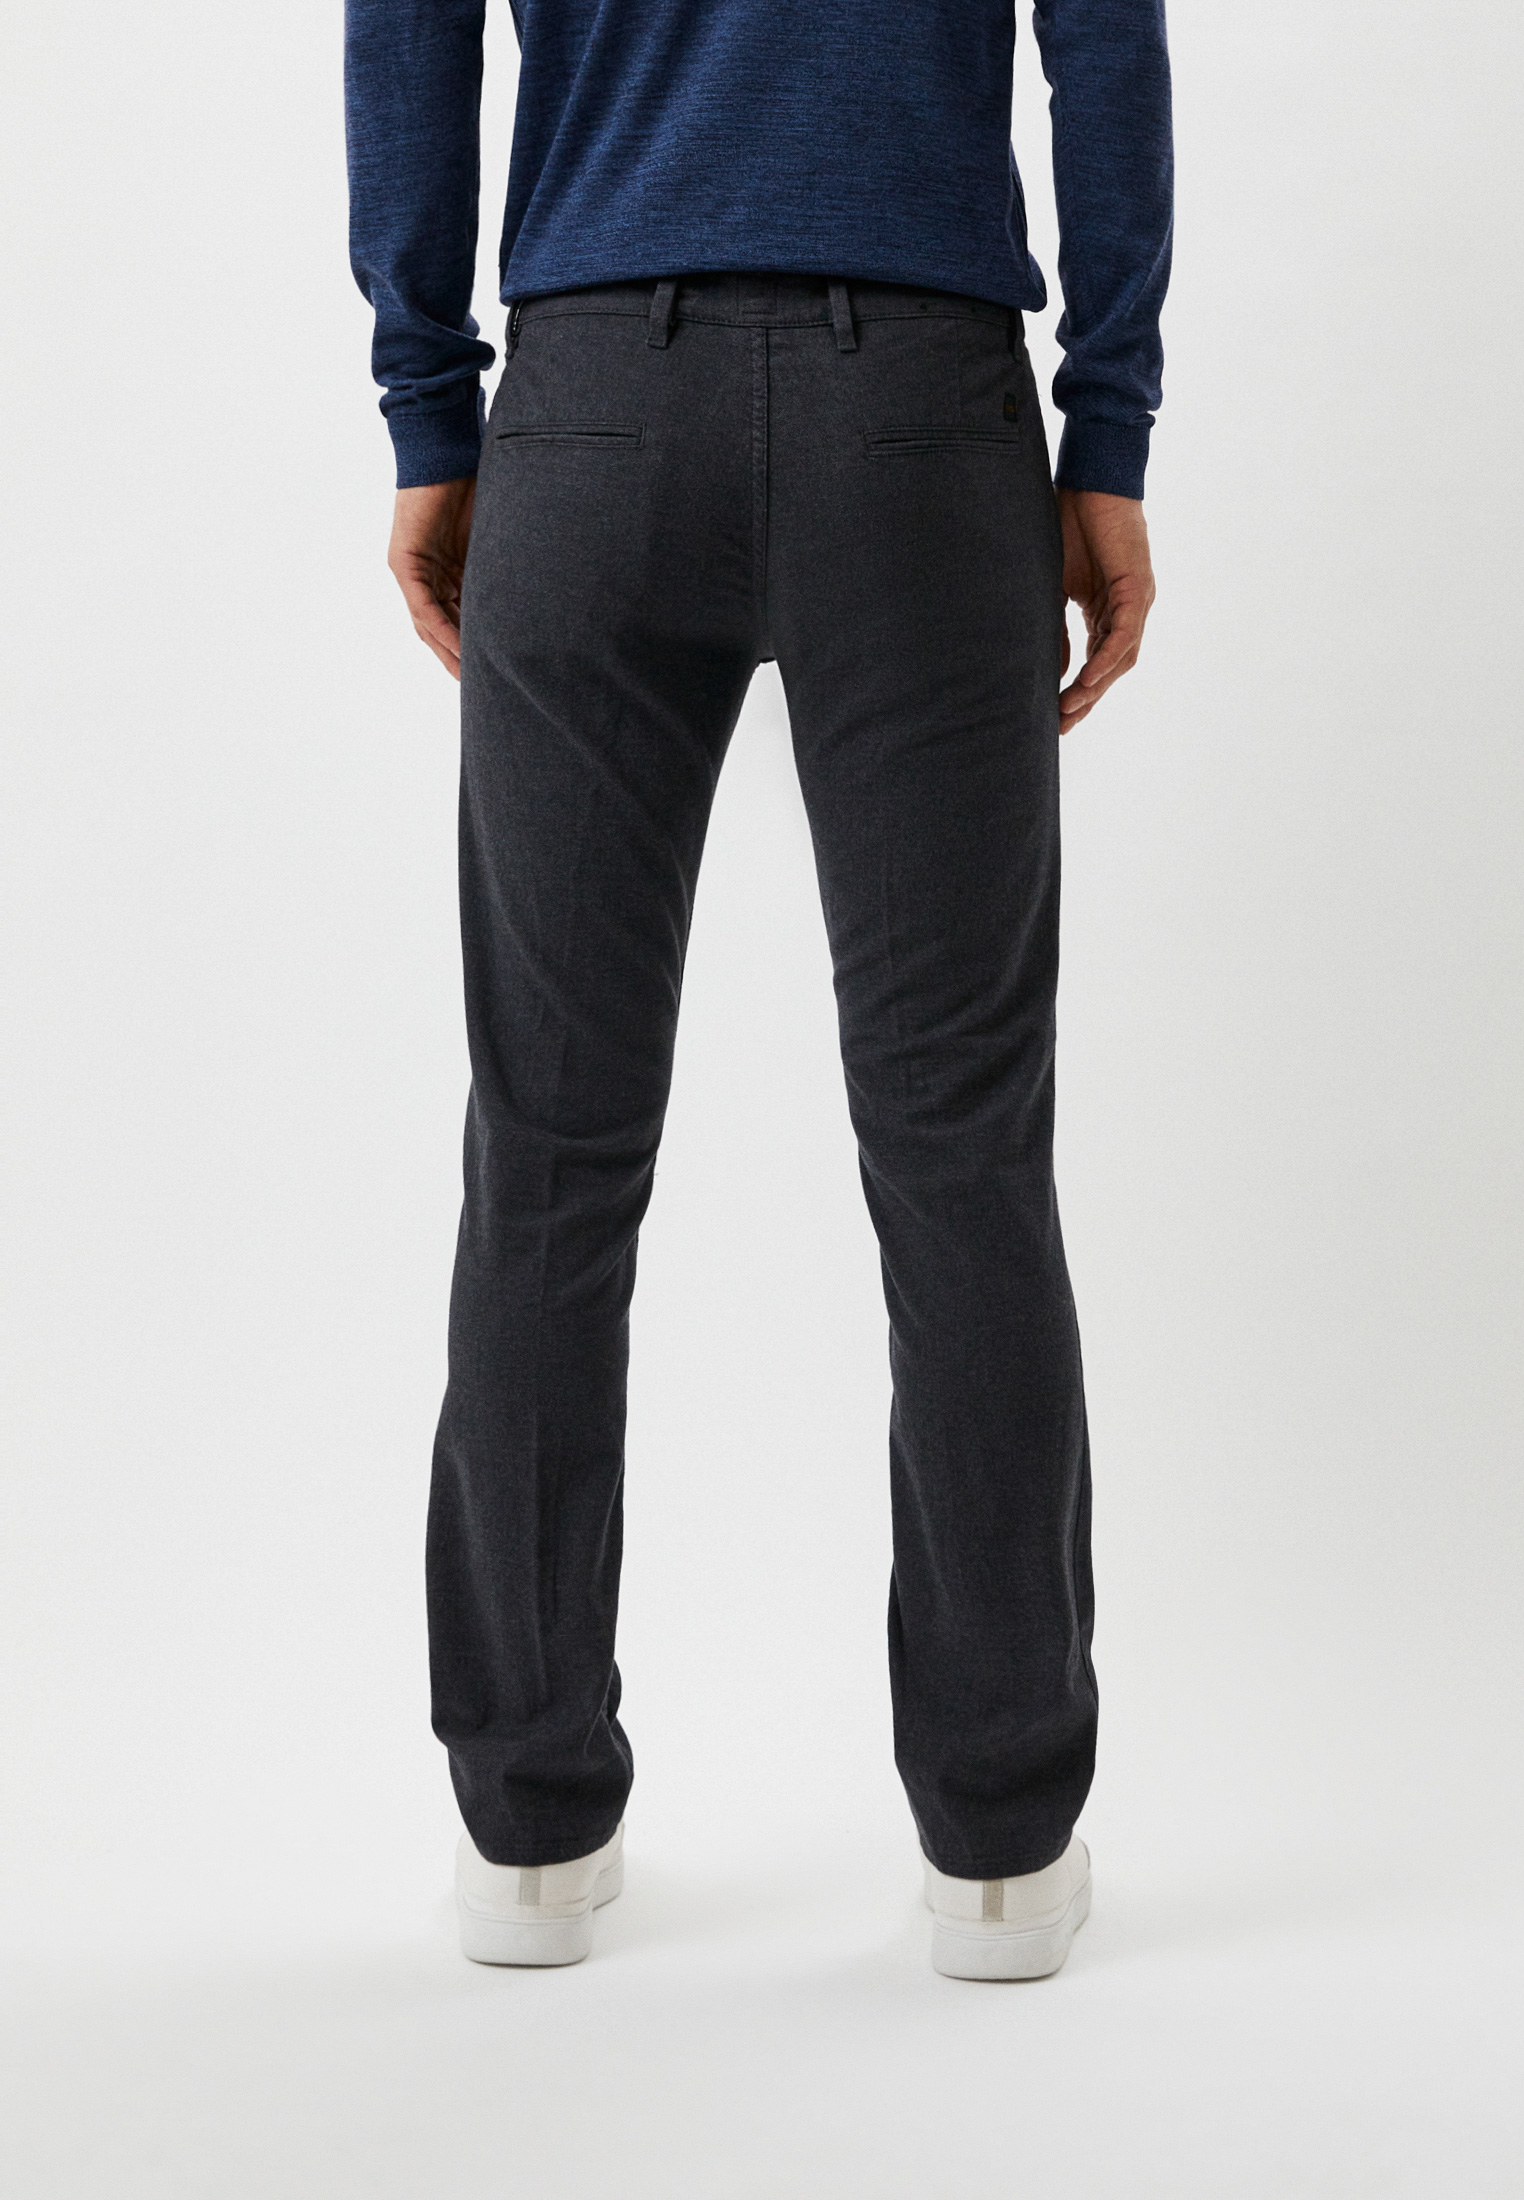 Мужские классические брюки Boss (Босс) 50477730: изображение 3